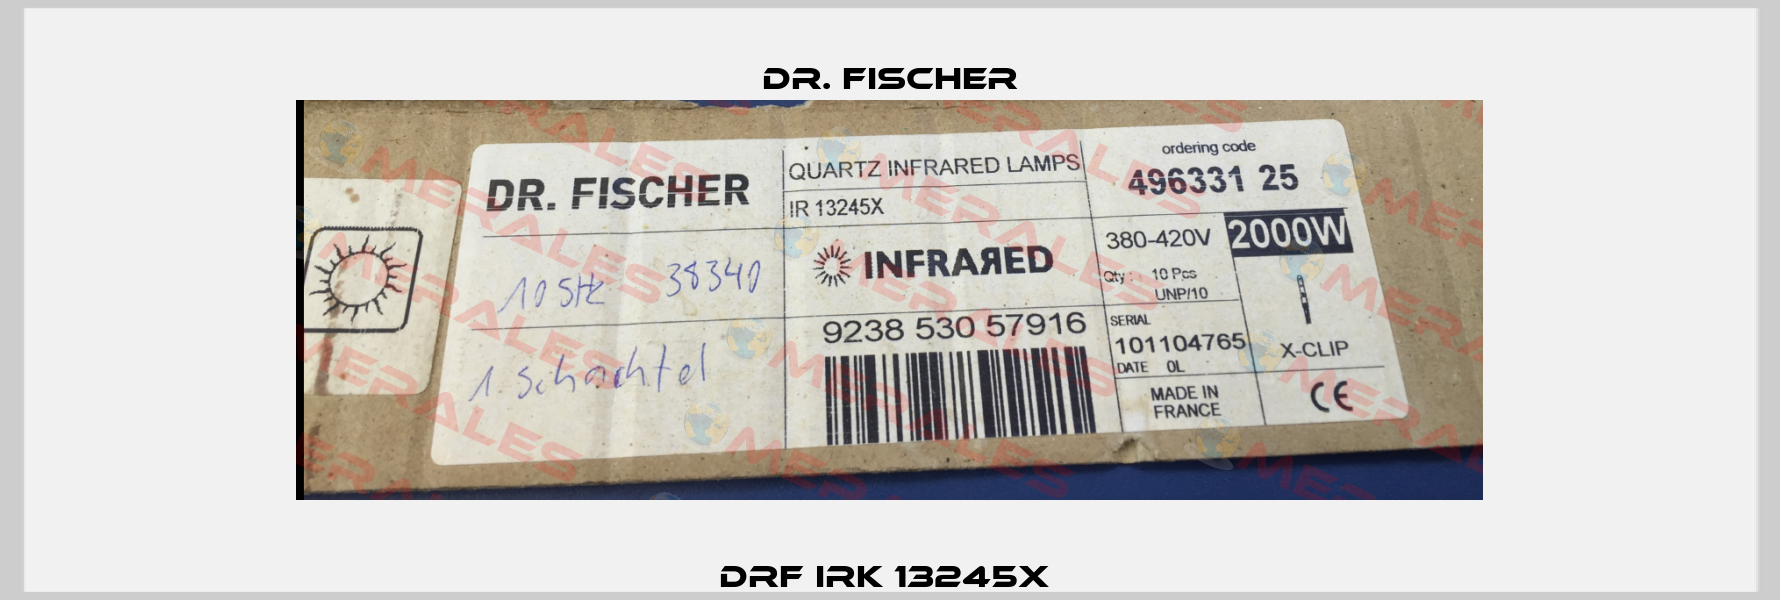 DRF IRK 13245x  Dr. Fischer